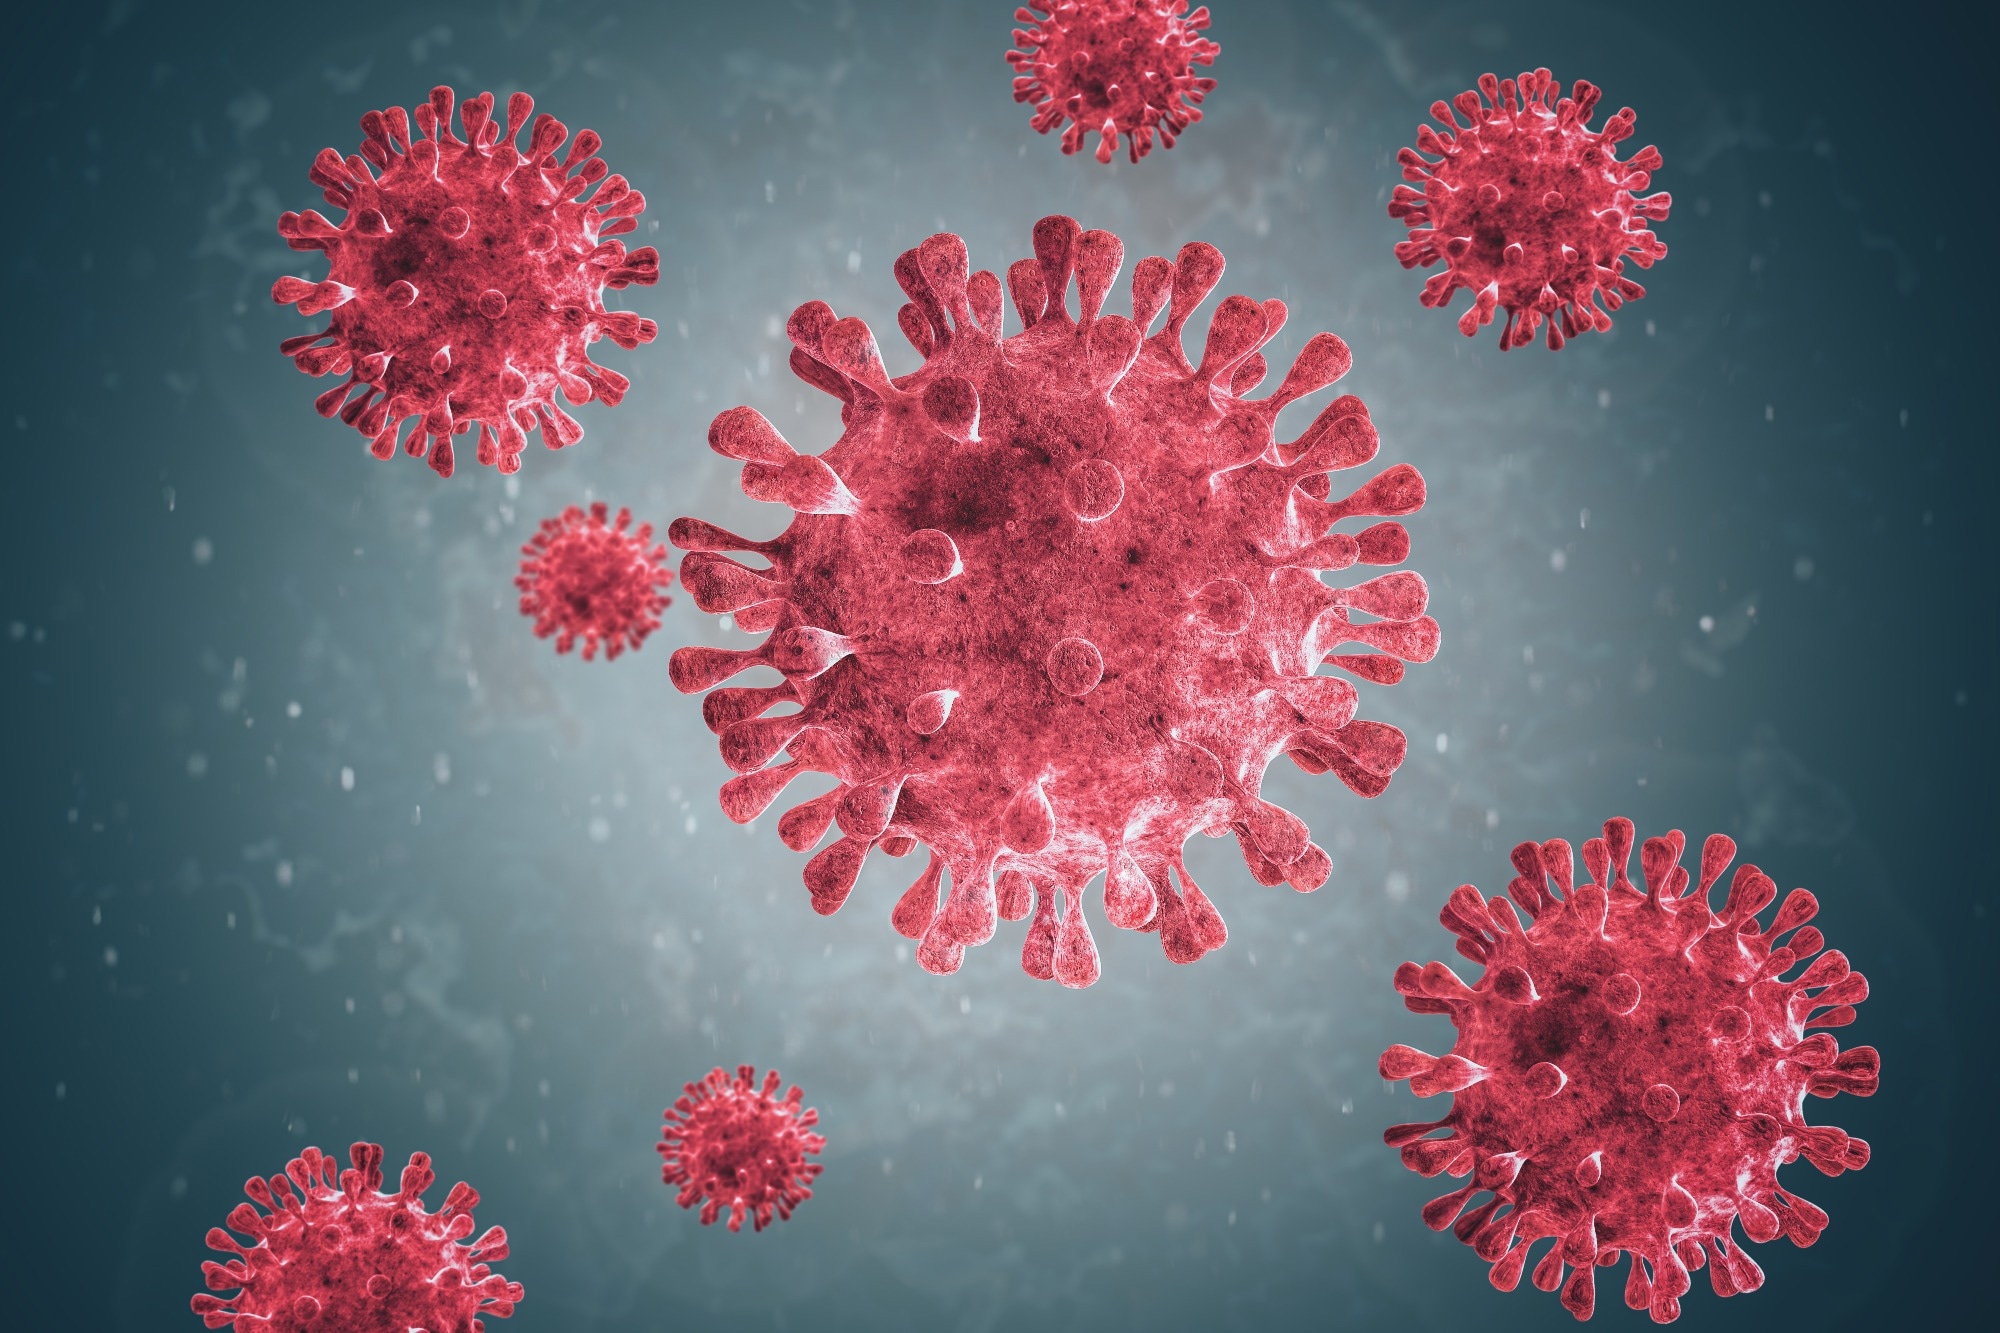 Nuevas variantes del metapneumovirus humano post-Covid en España destacan evolución e impacto